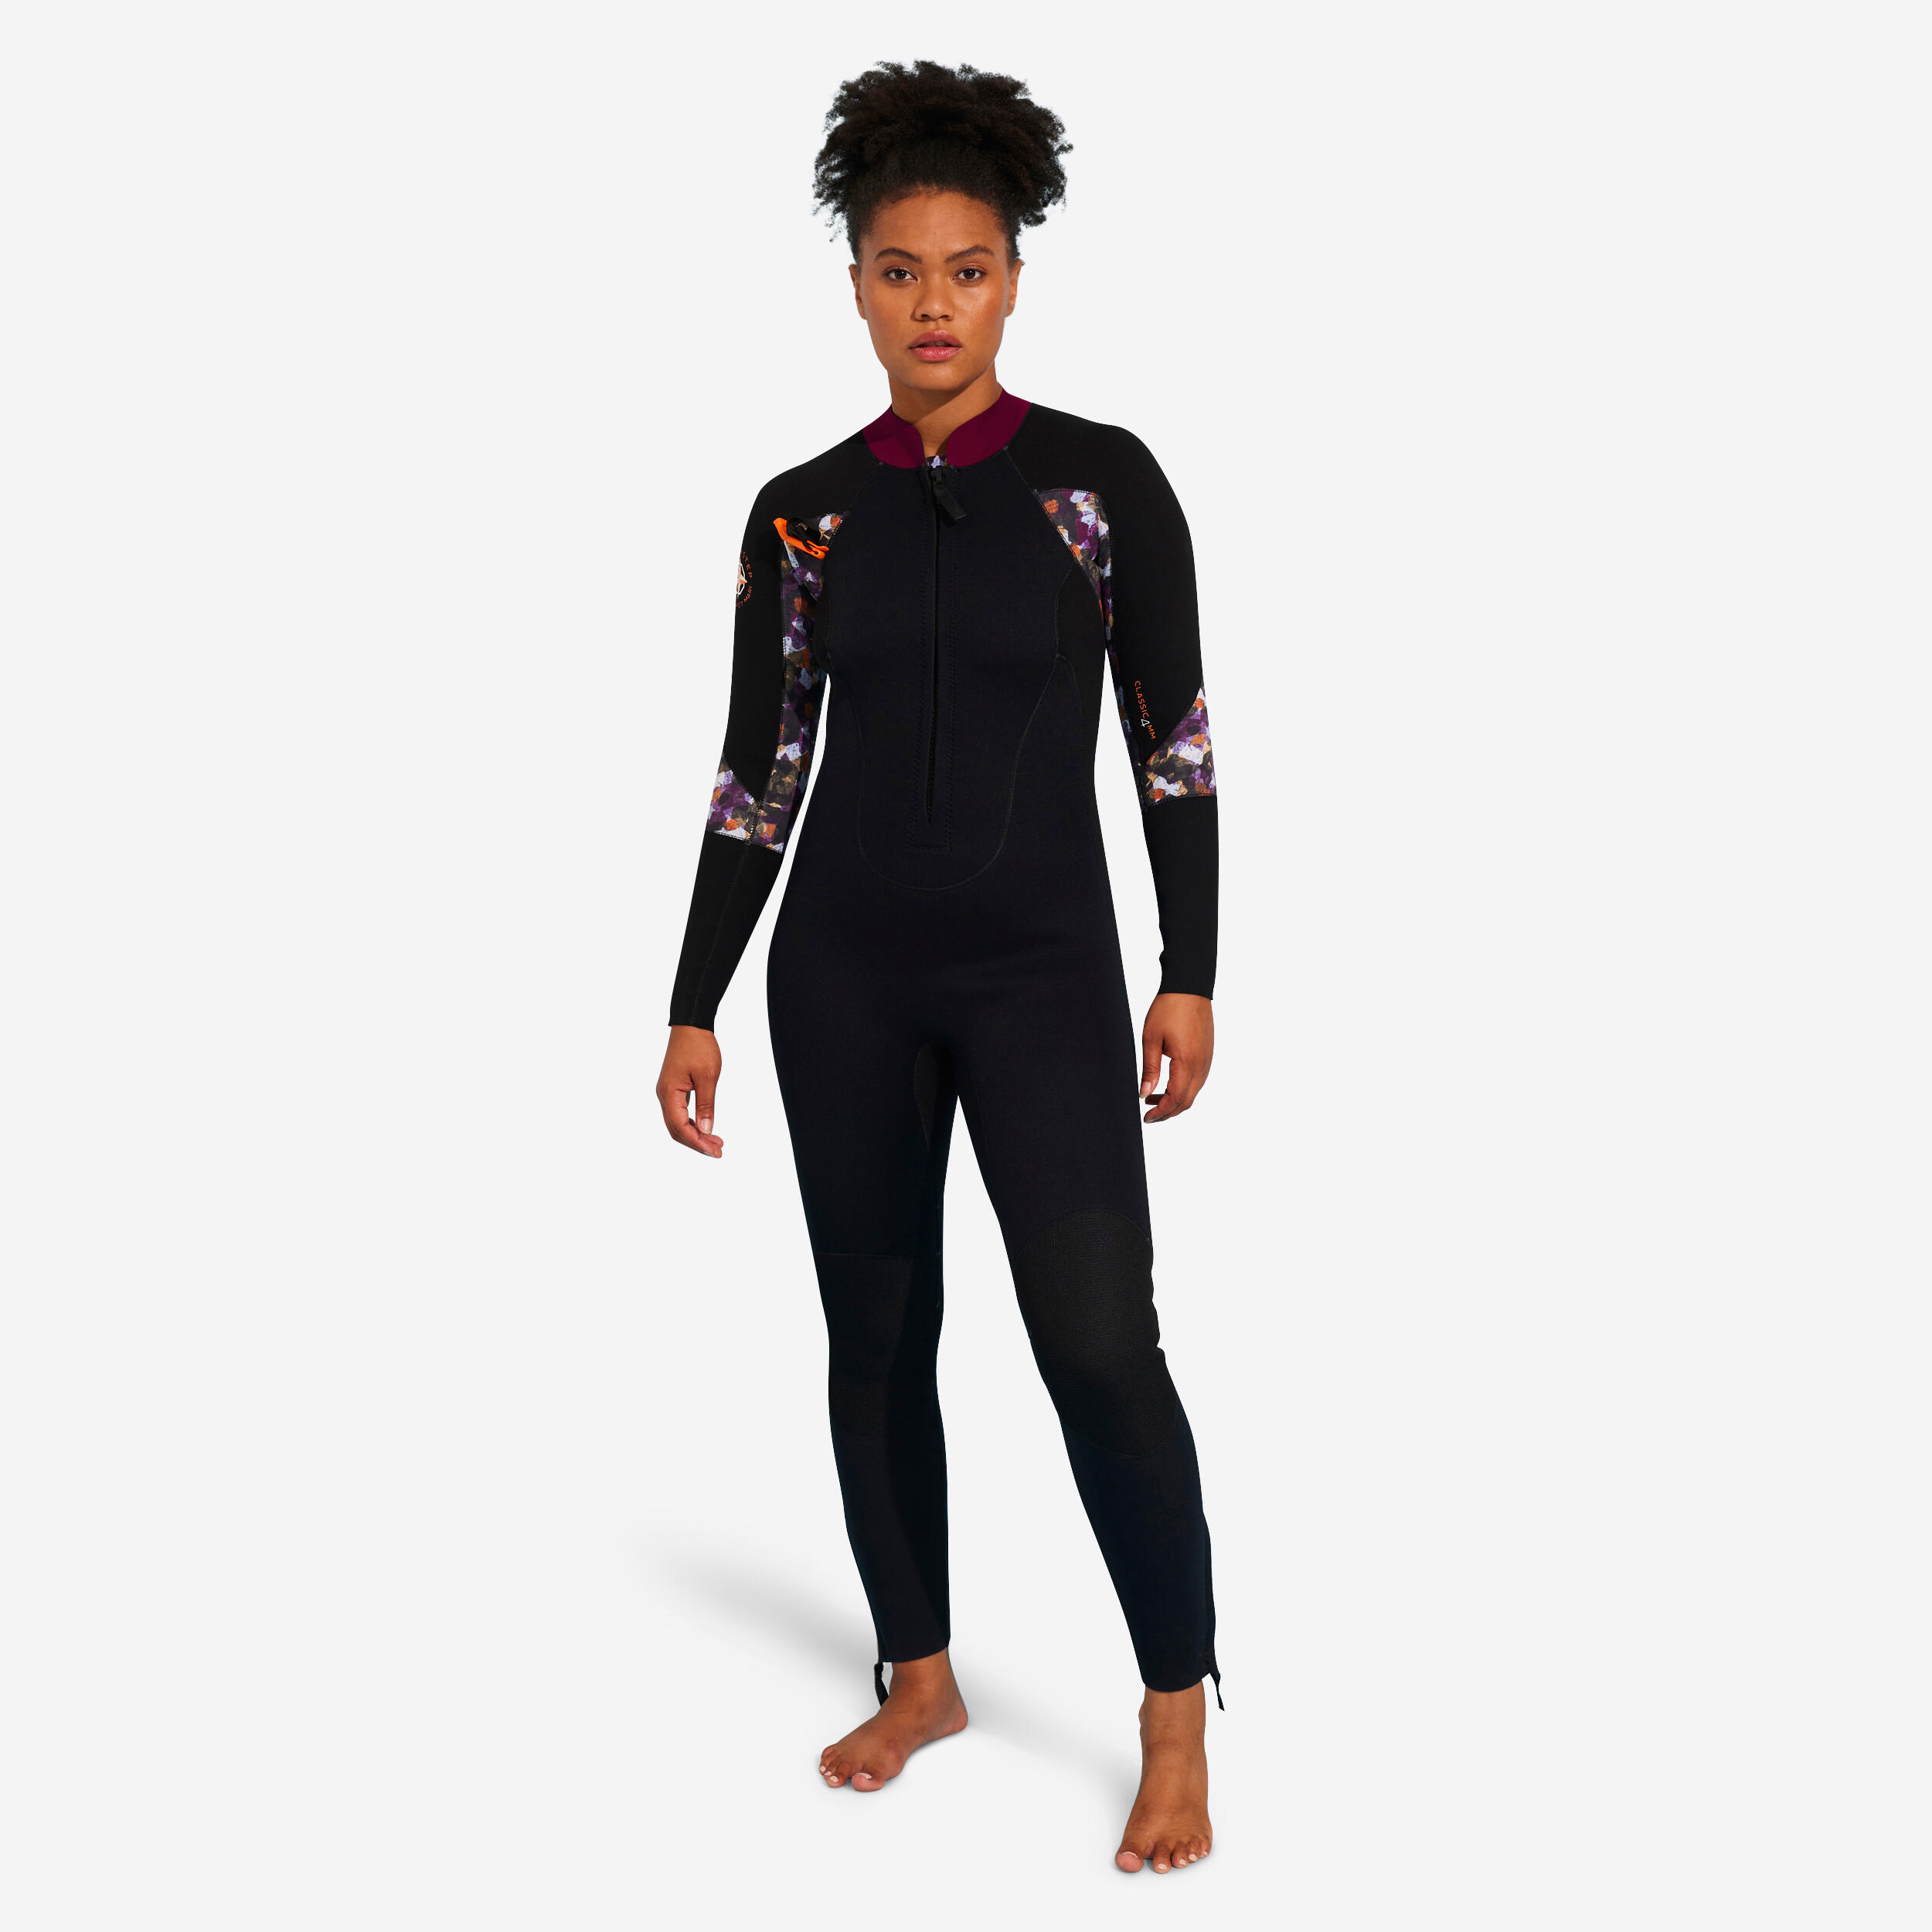 OCEAN STEP Women's Neoprene Wetsuit Sea Walking 4/3 Black Print